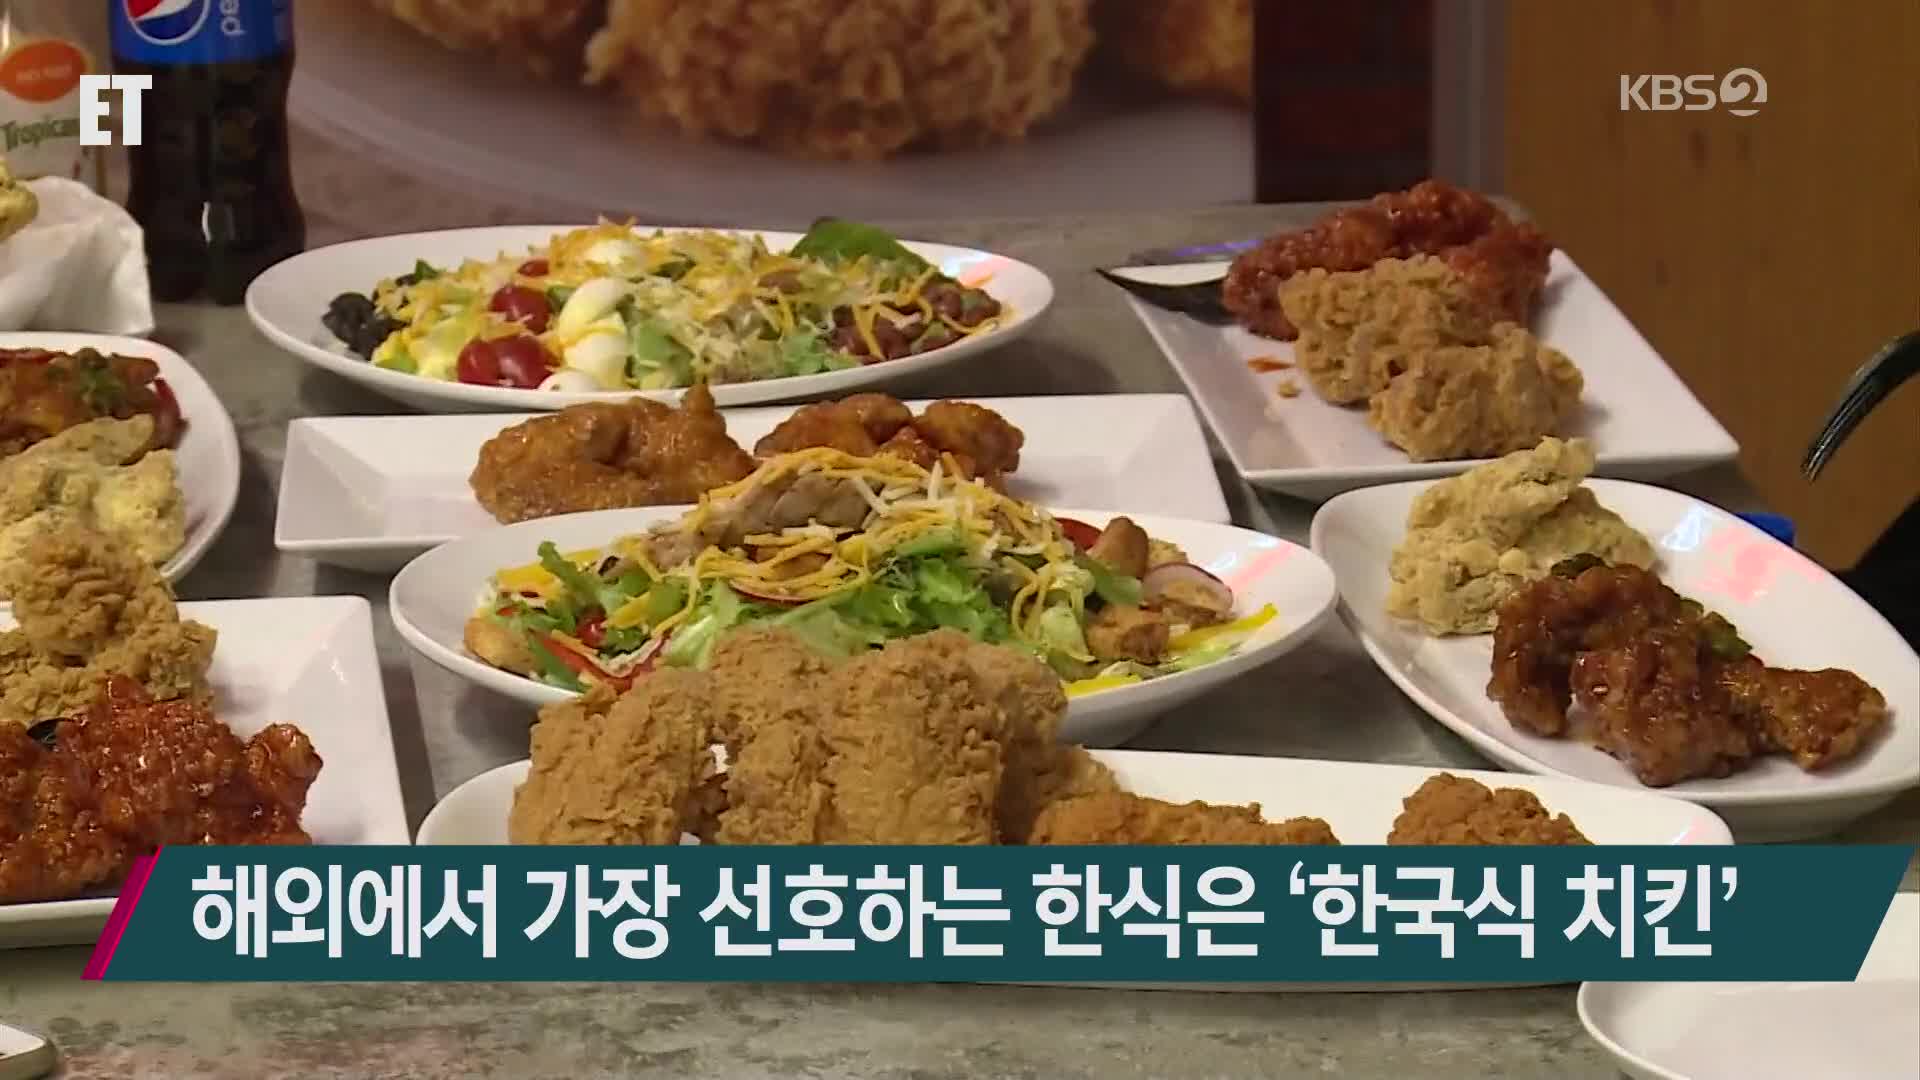 해외에서 가장 선호하는 한식은 ‘한국식 치킨’